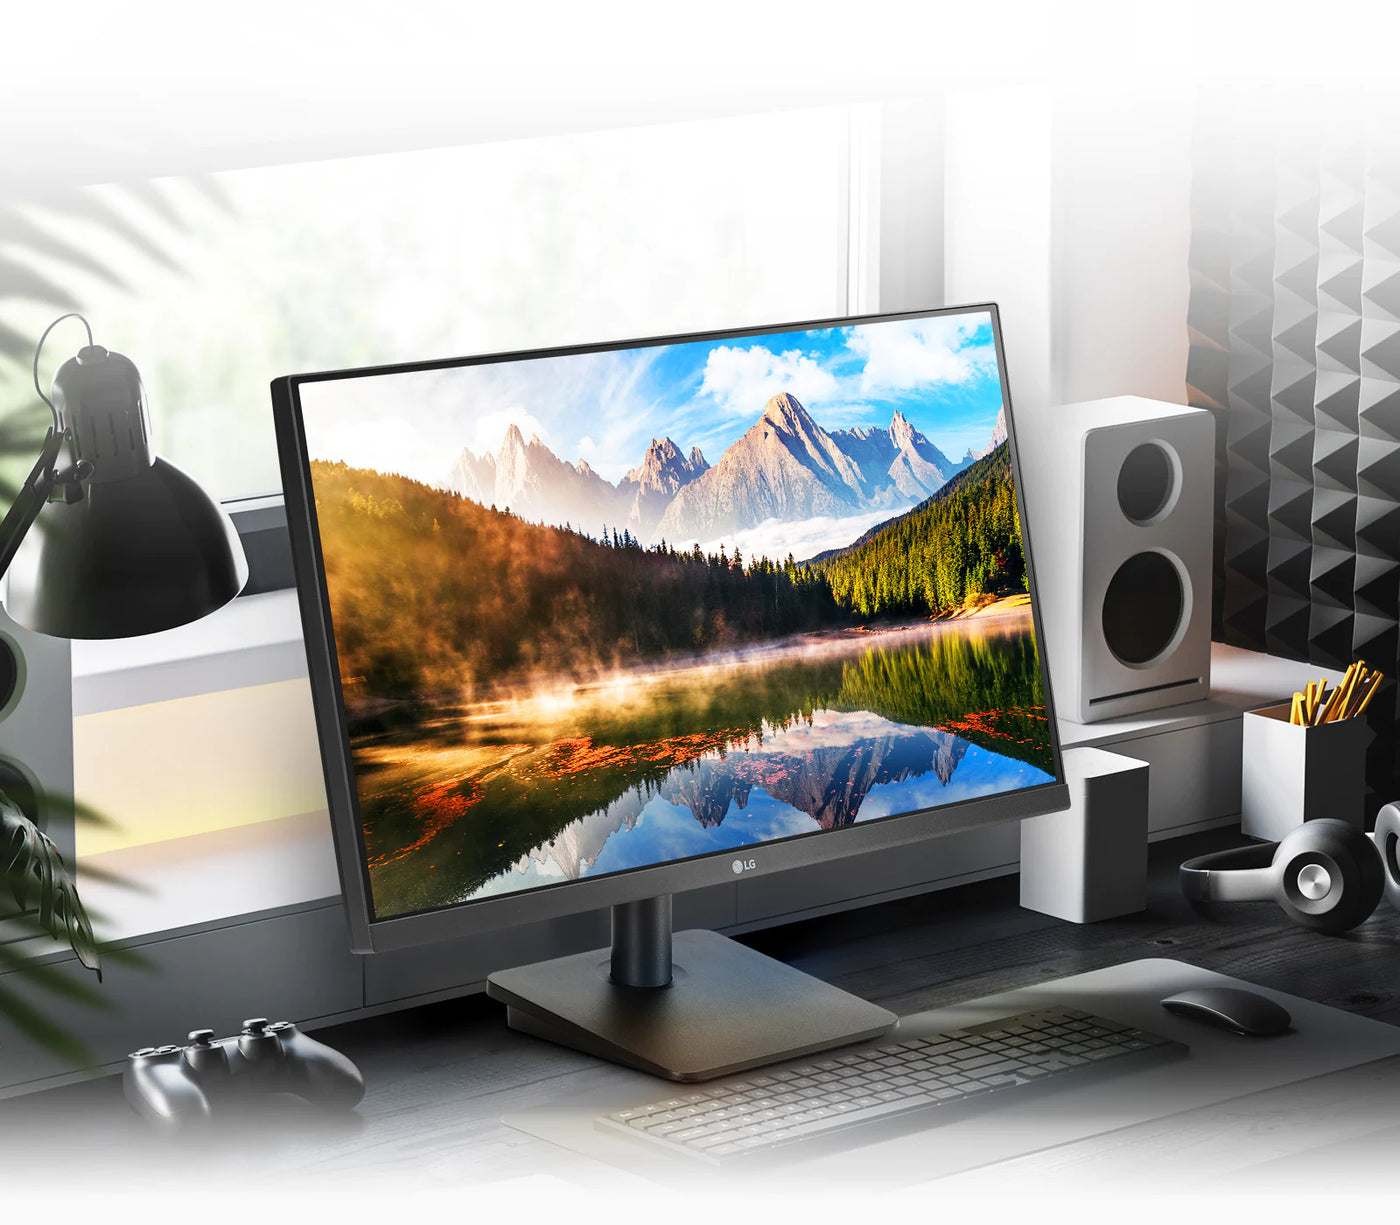 LG 24MP400-B monitor a kijelzőn hegyes völgyes, vízparti tájkép. Művirágok, egér, fejhallgató, joystick és billentyűzettel egy asztalon otthoni környezetben.